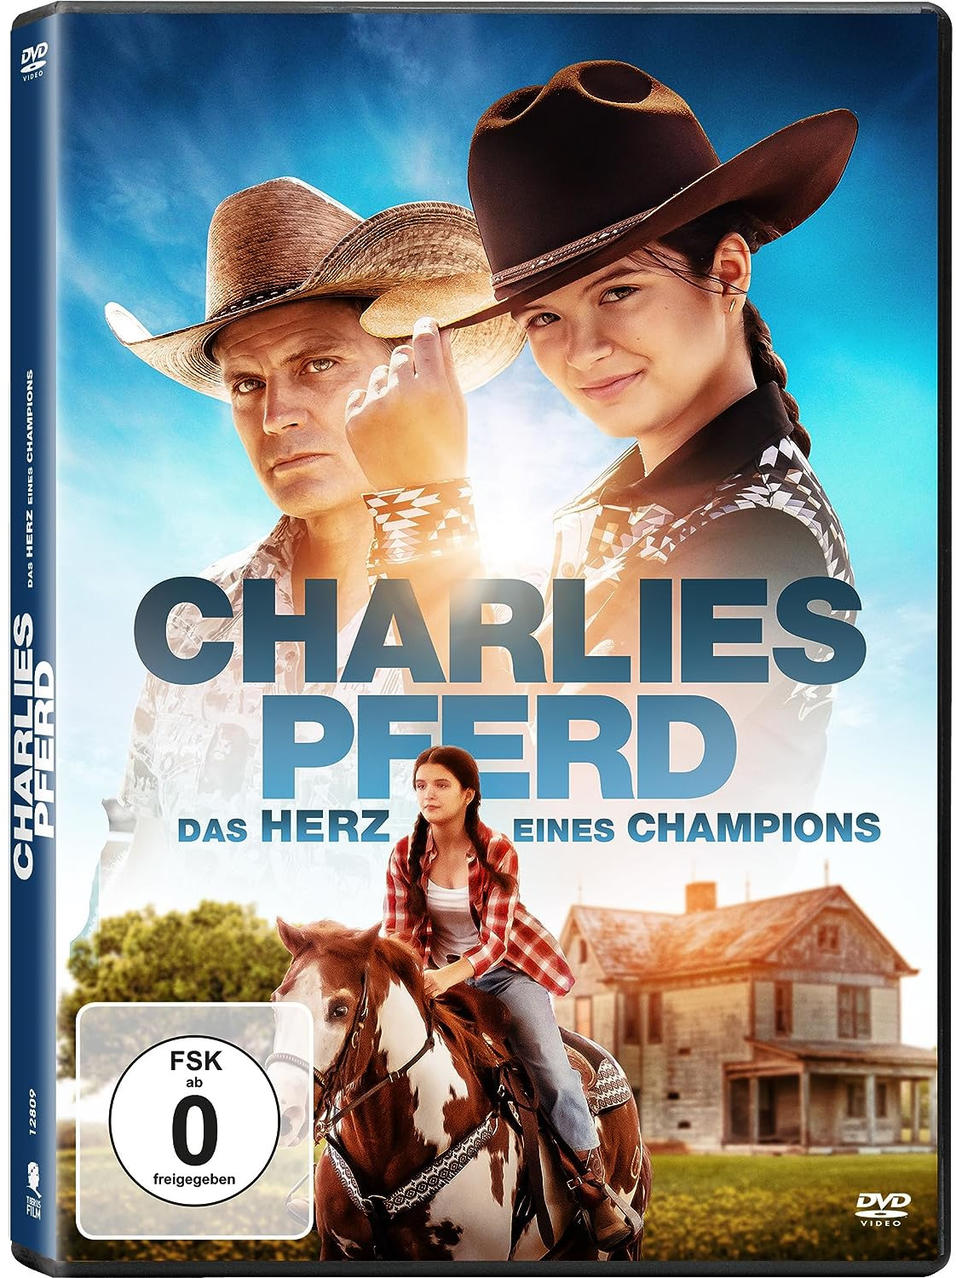 Charlies DVD Herz Champions eines Pferd - Das